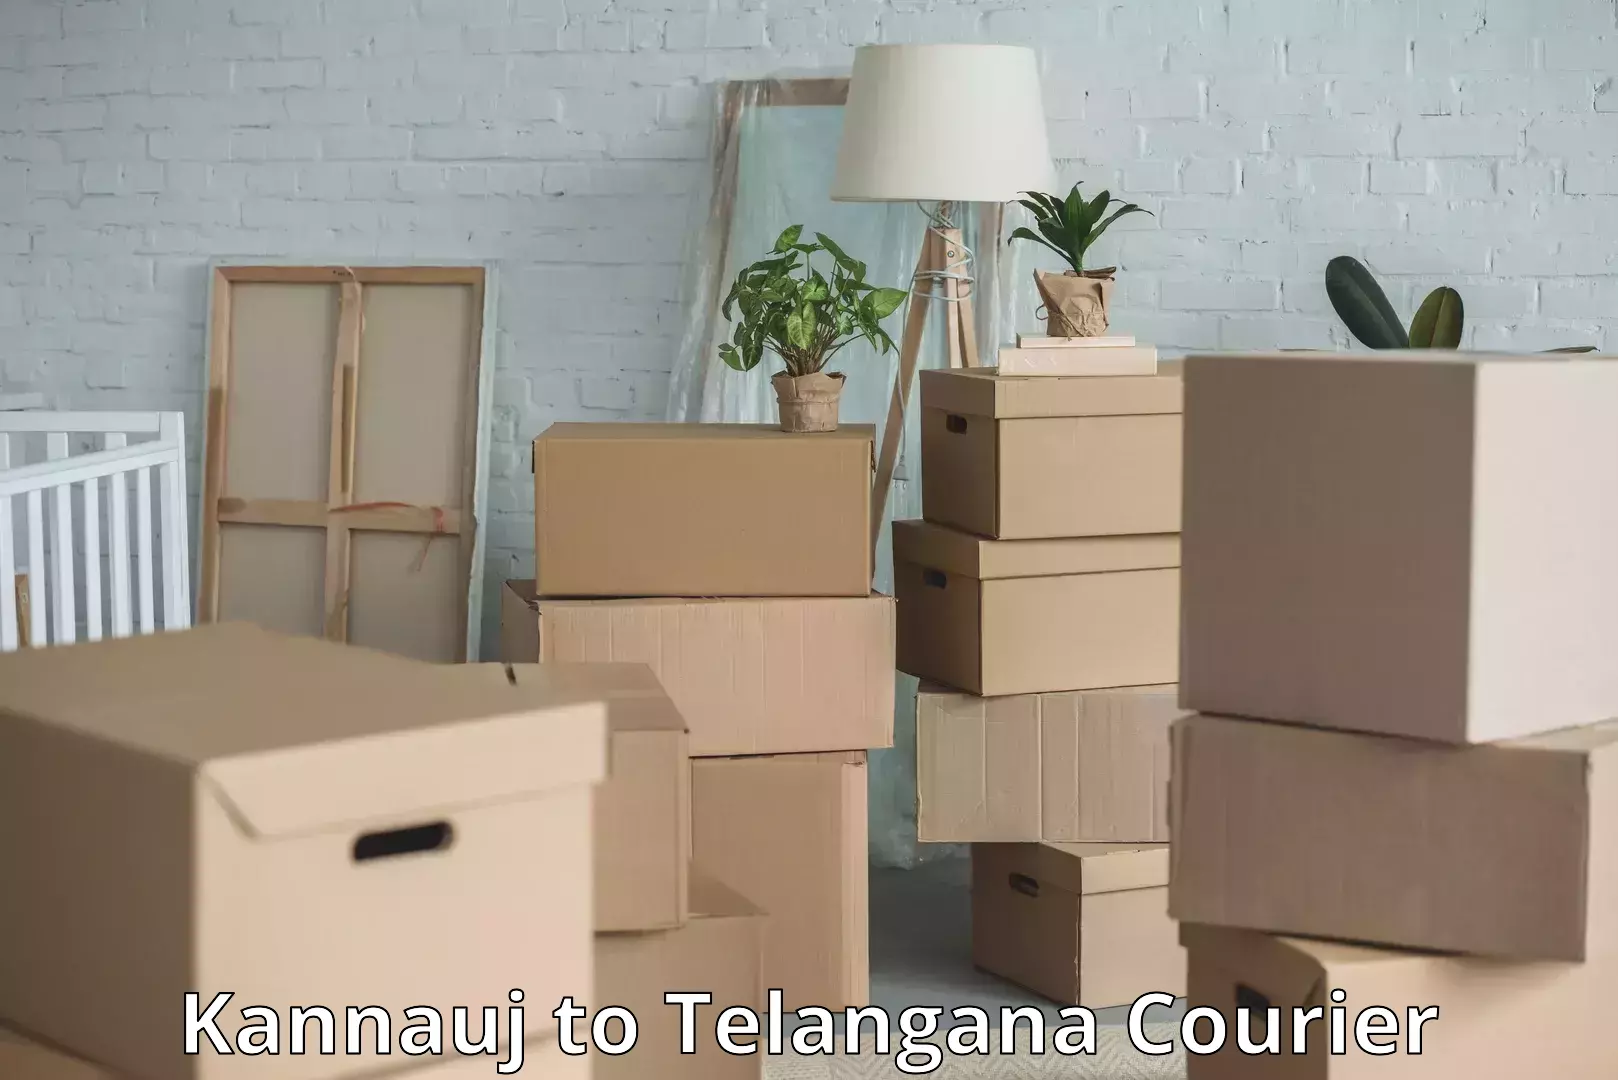 Luggage transport solutions Kannauj to Telangana